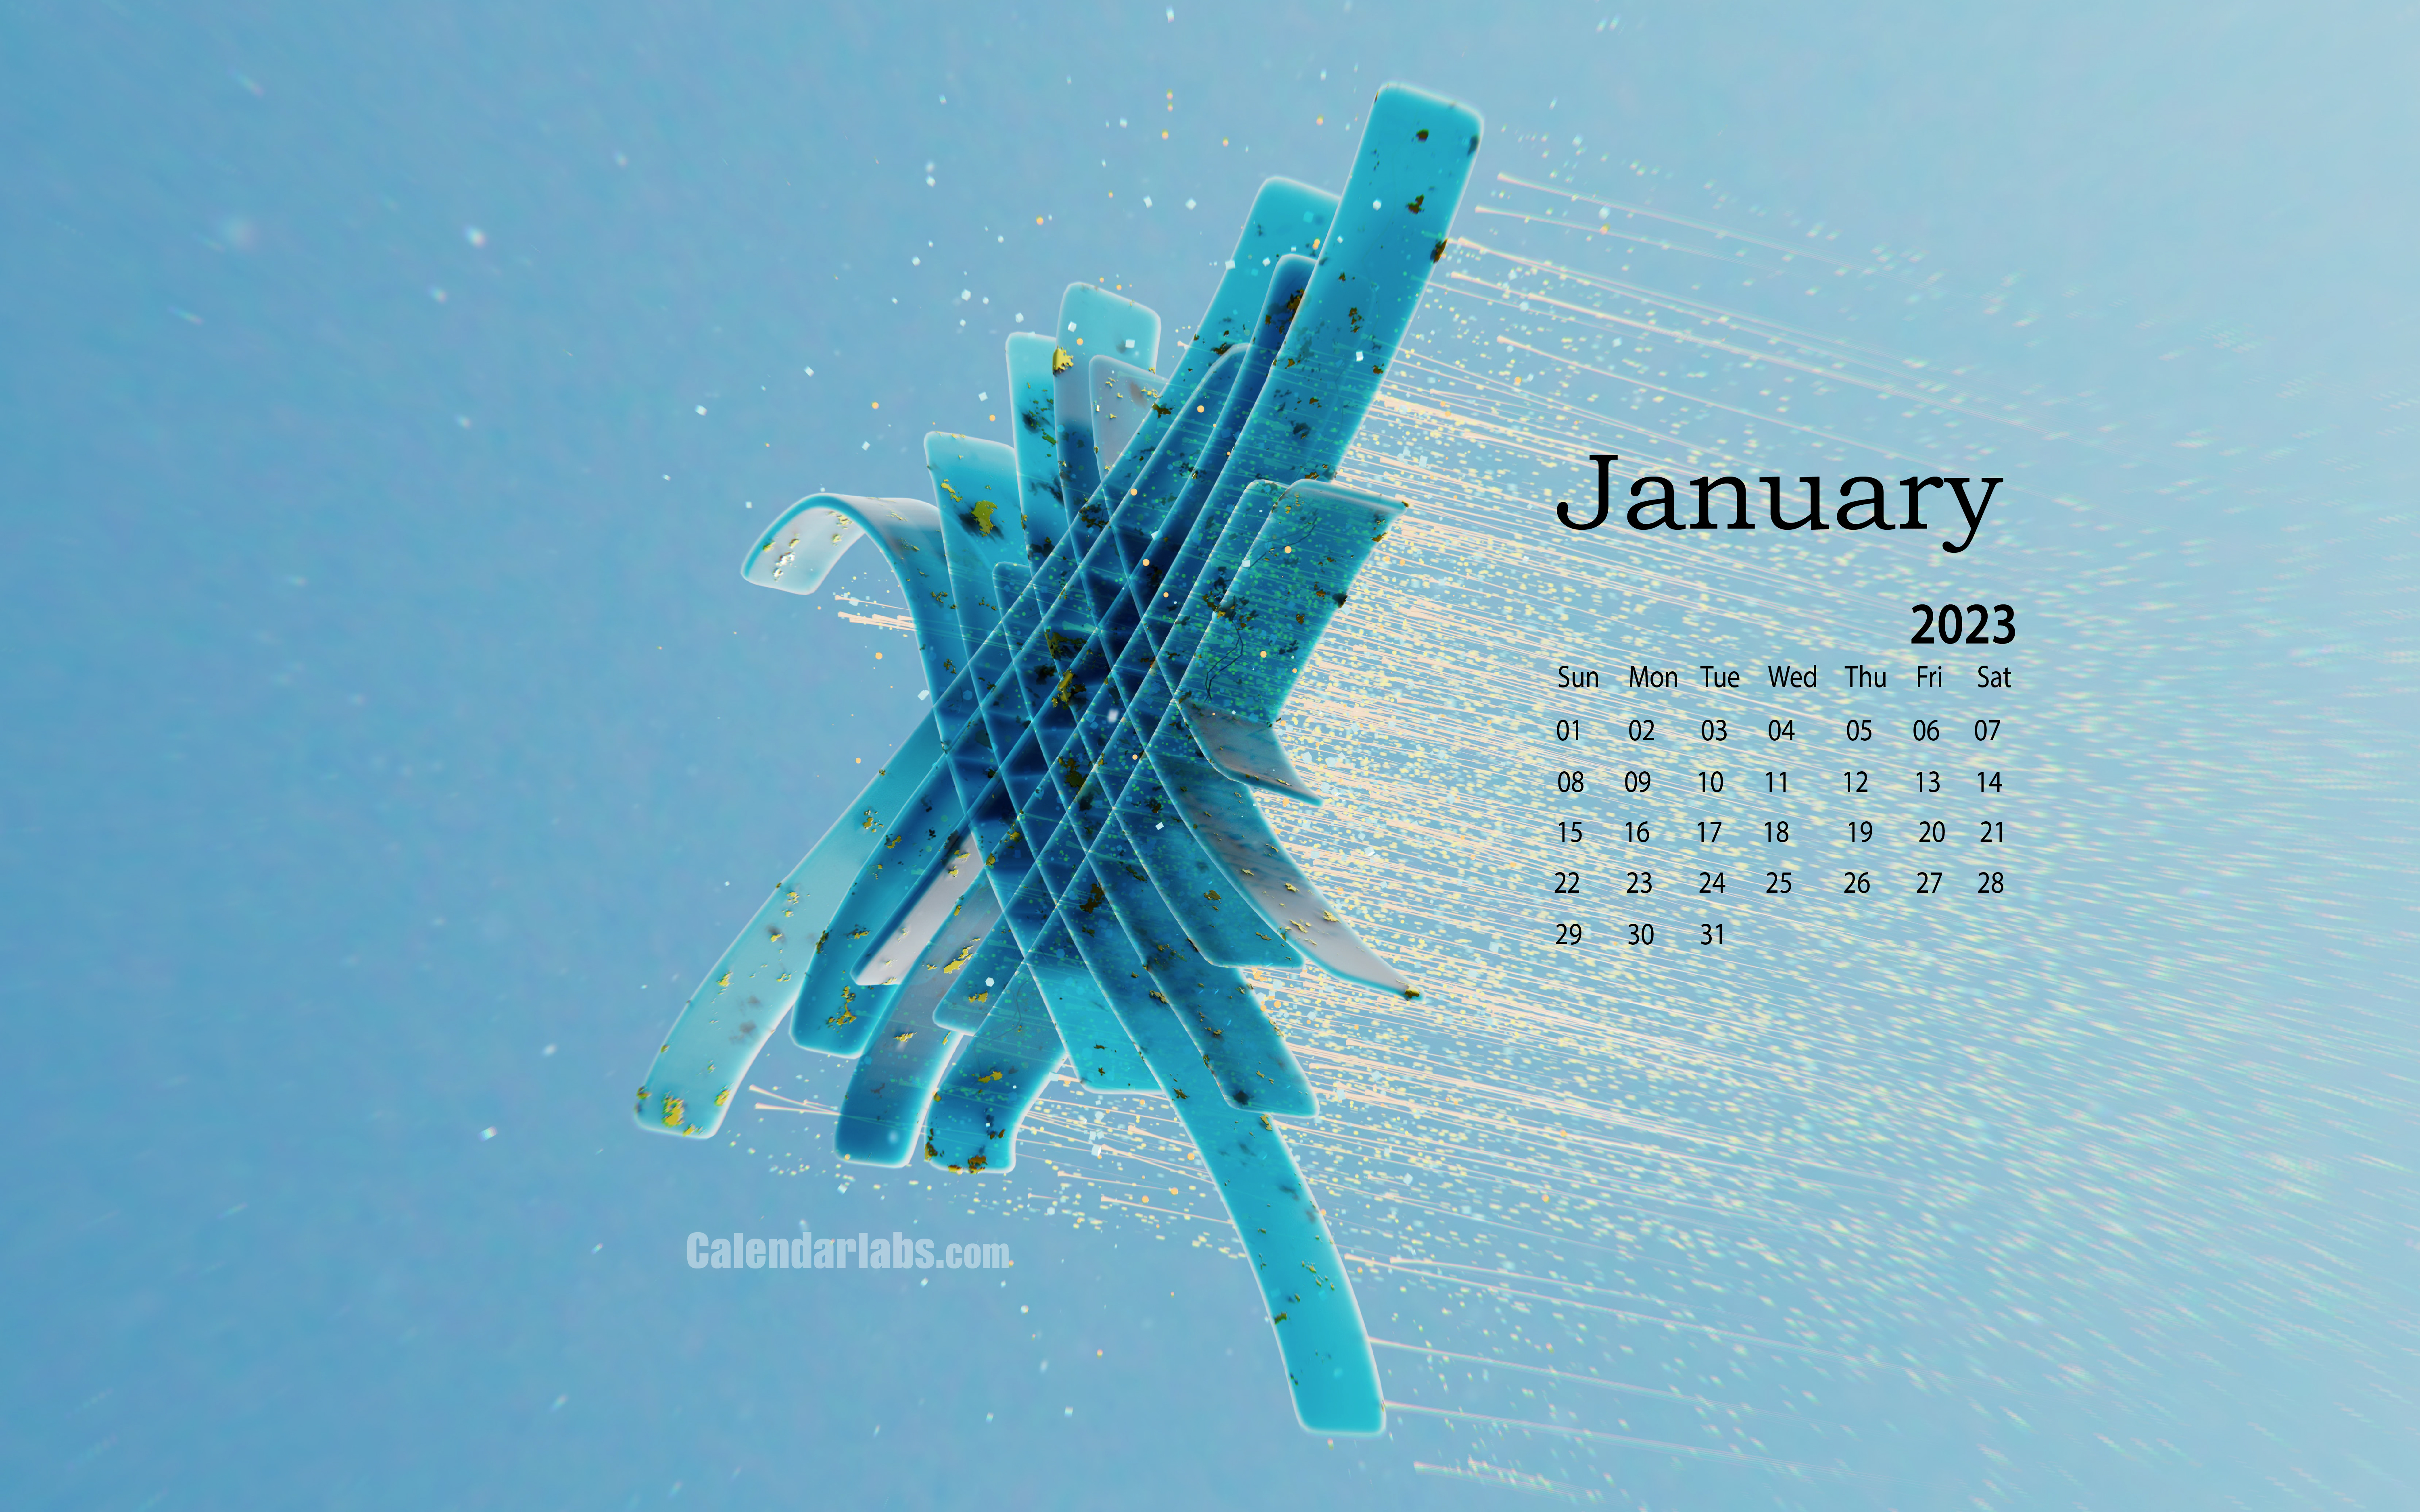 January 2023 Astrology Calendar